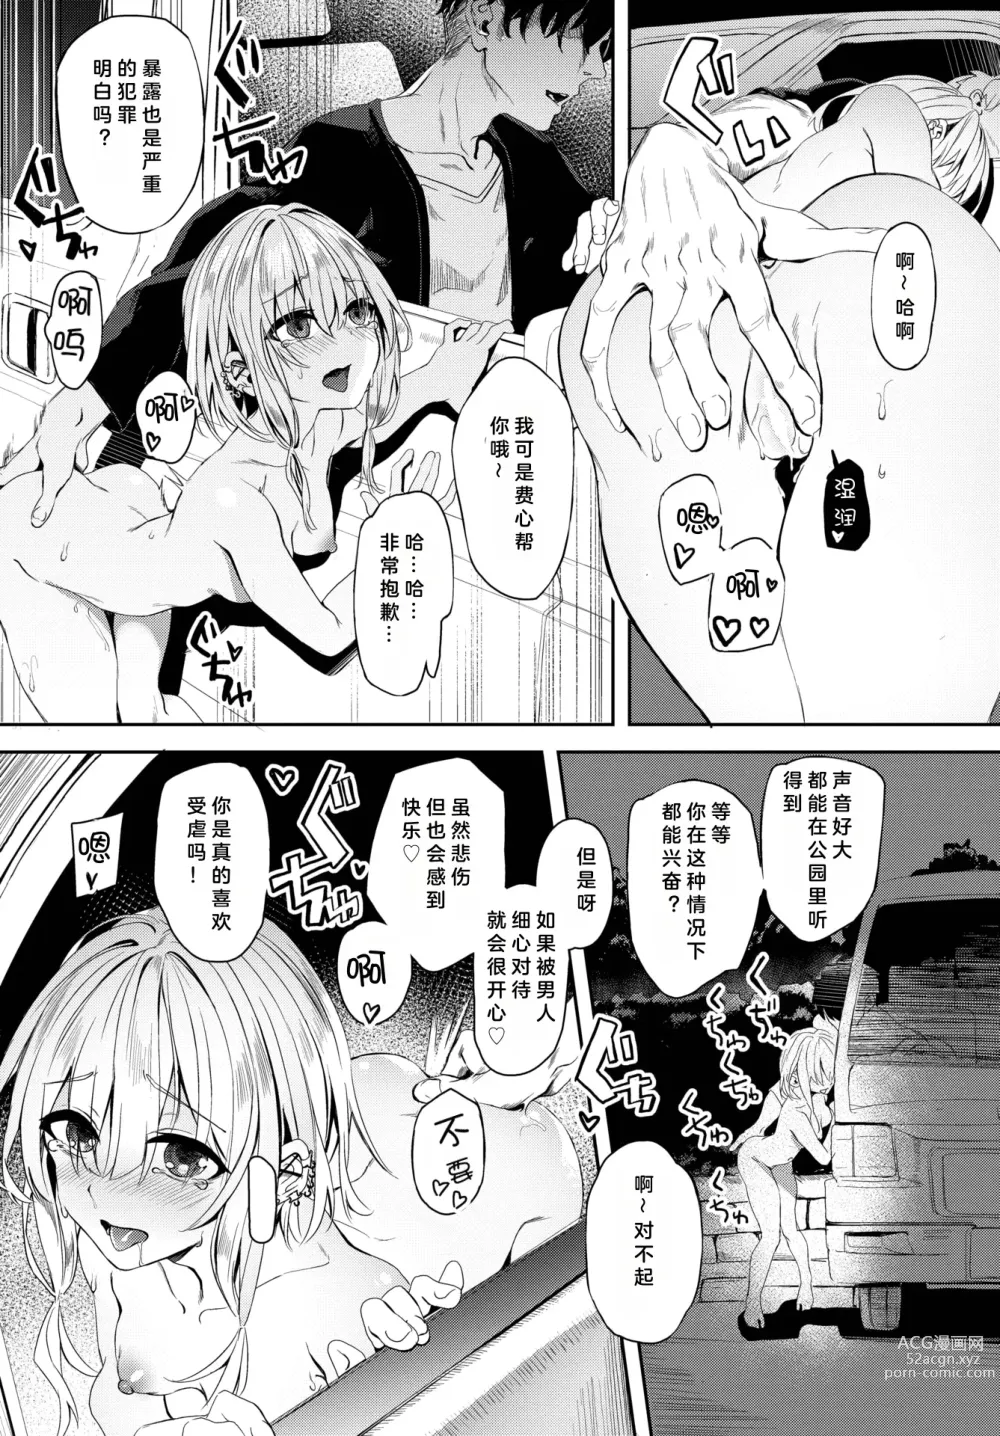 Page 16 of manga Jishou Kamieshi Yanagi no Enkou Ochinpo Report Manga Sono 1-3